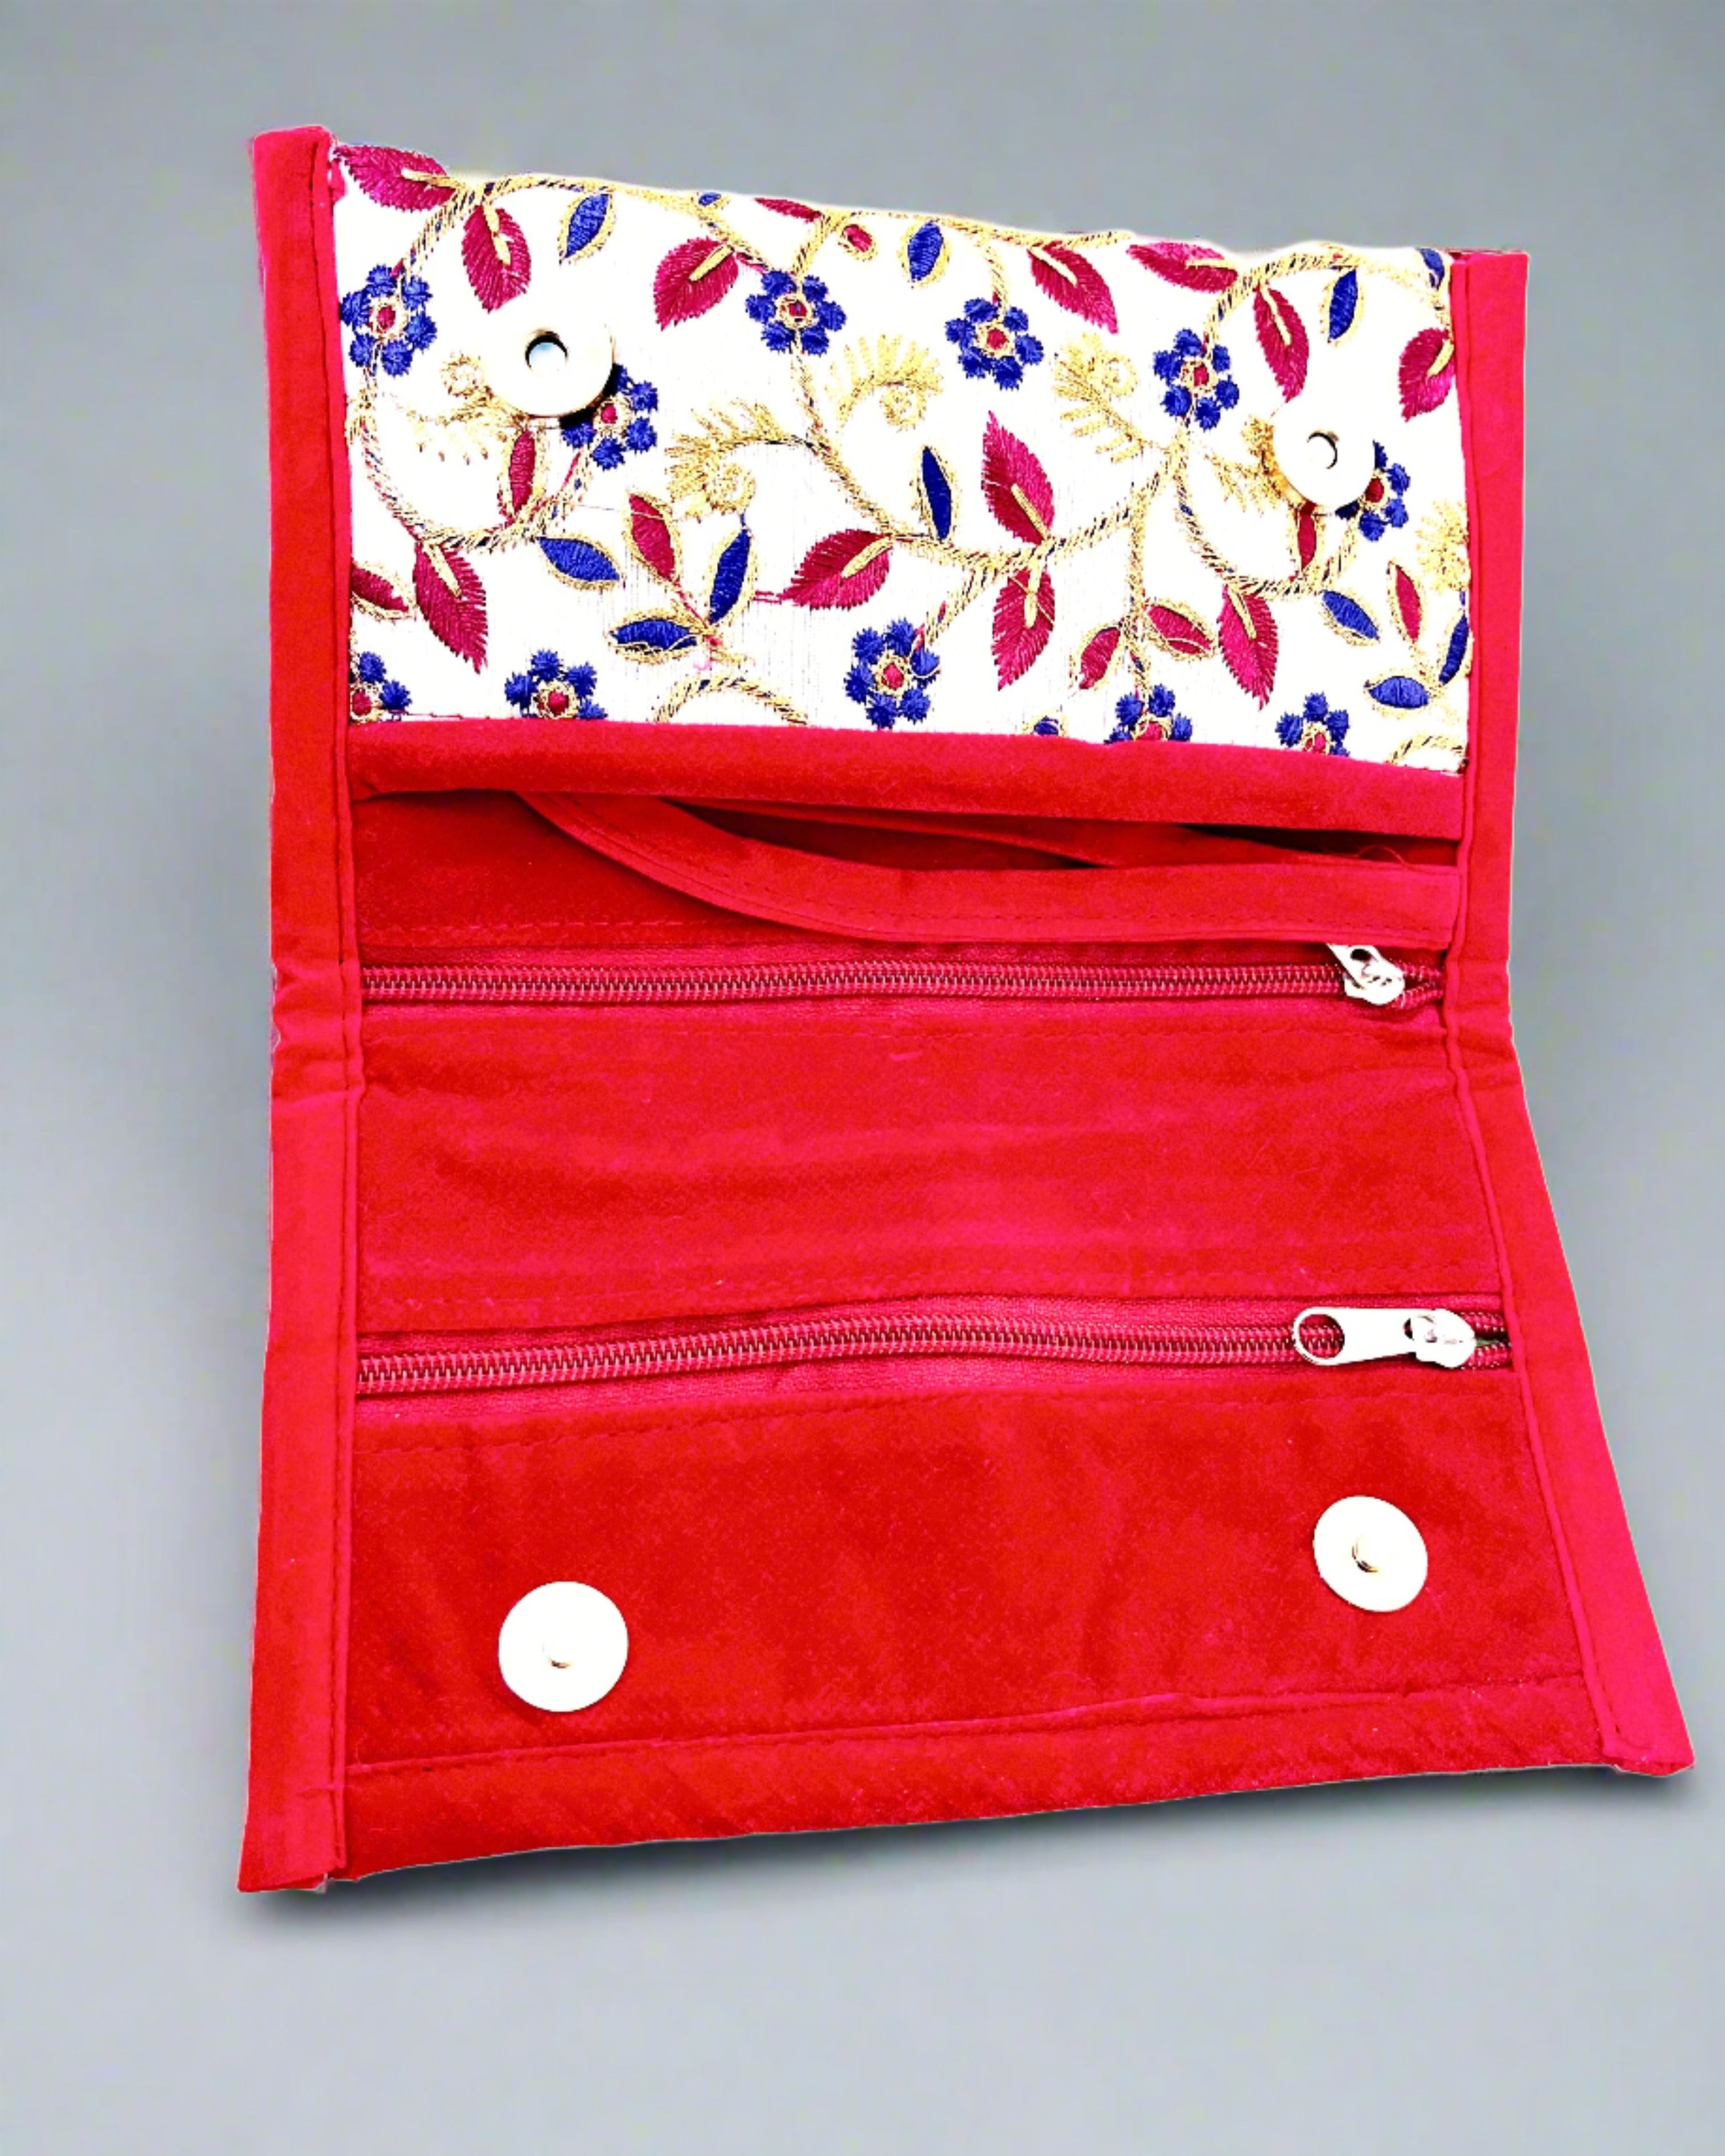 Amazon.com: African clutch purse/kente purse/Ankara fabric clutch purse/Tribal  clutch purse/Multicolor purse/Handmade purse. : Handmade Products